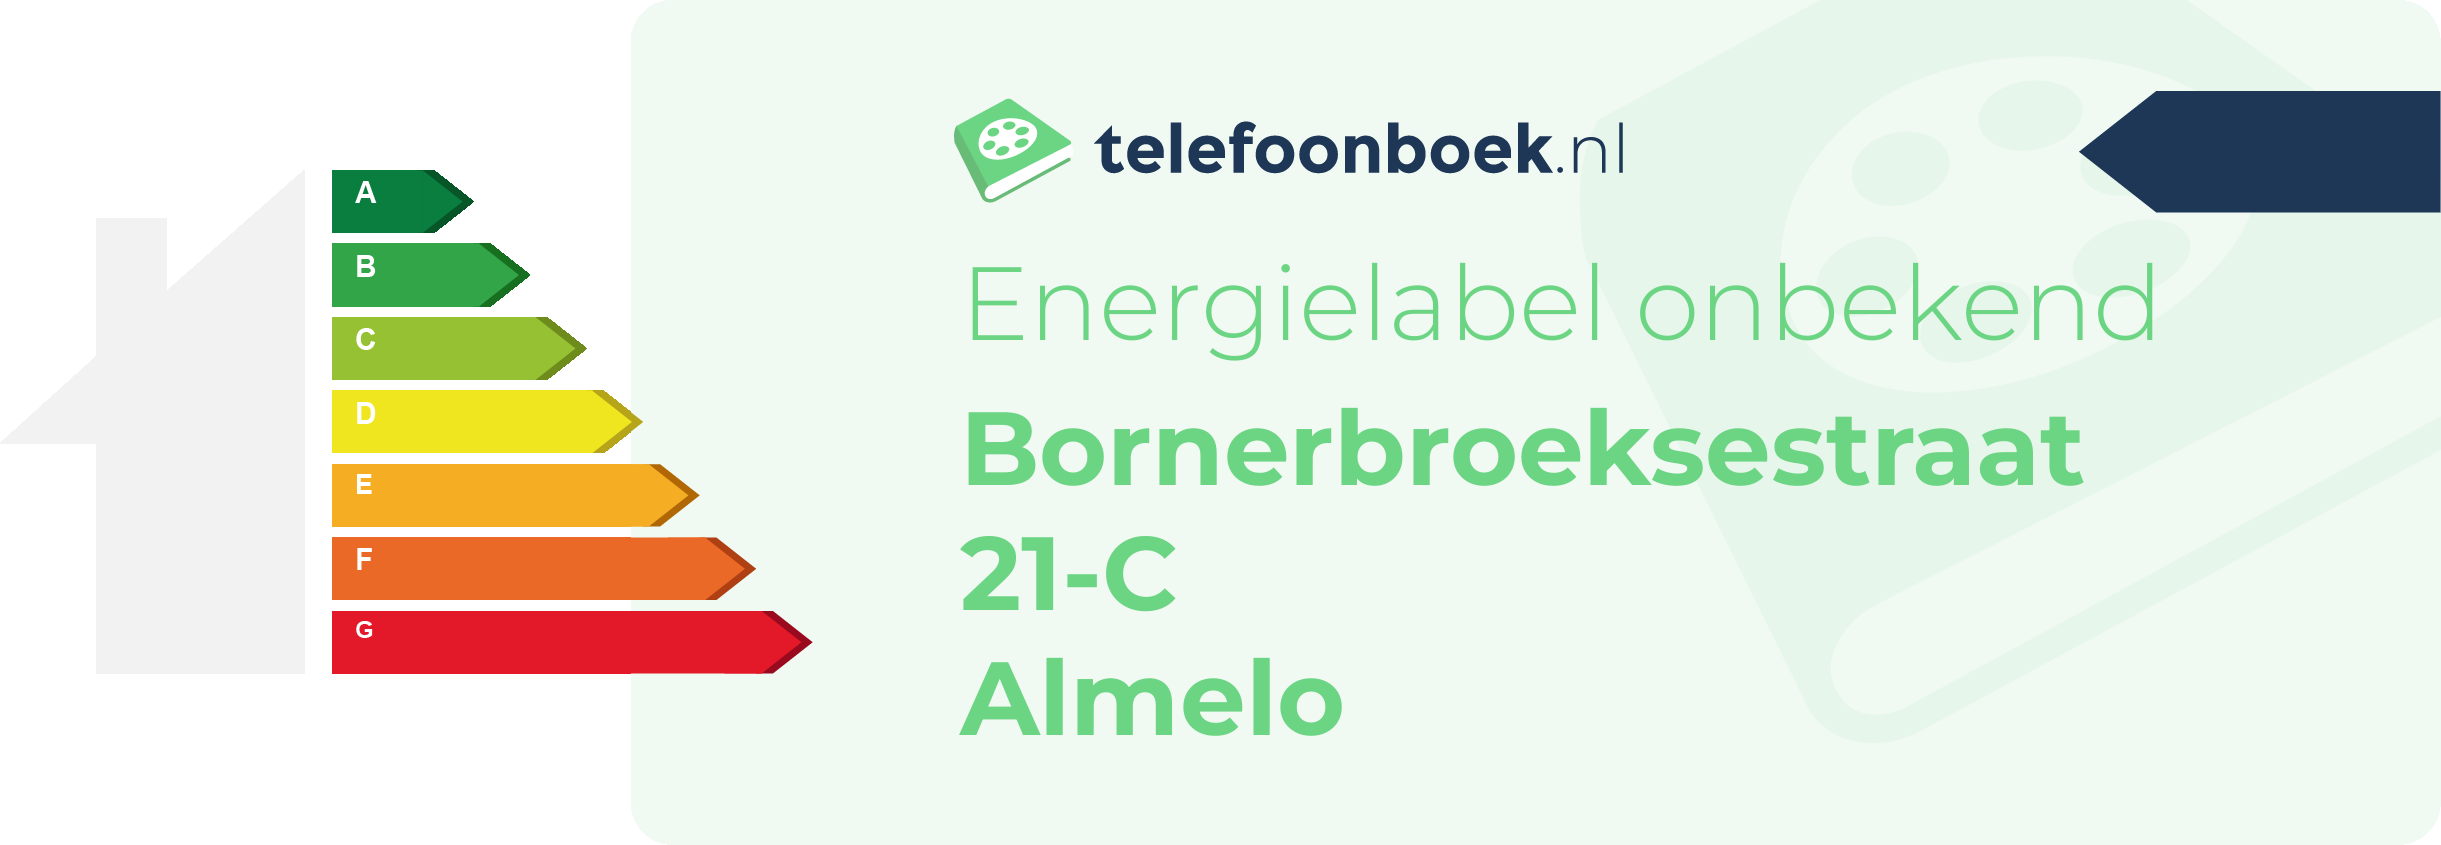 Energielabel Bornerbroeksestraat 21-C Almelo